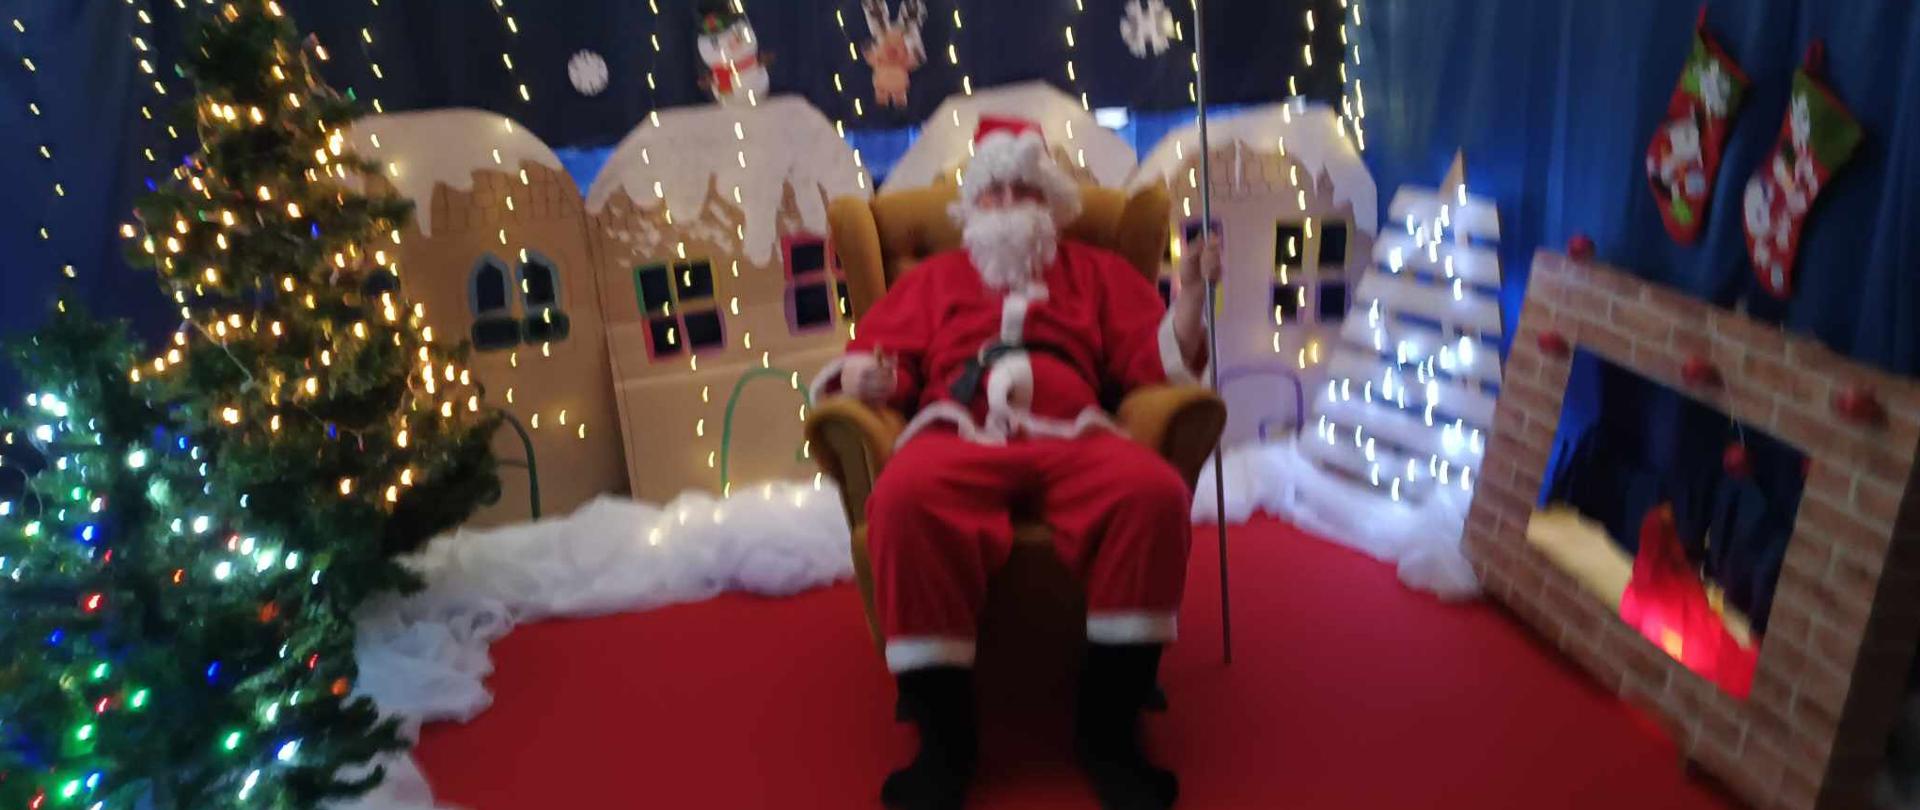 Święty Mikołaj siedzący w fotelu na tle dekoracji zimowej i oświetlonych choinek 